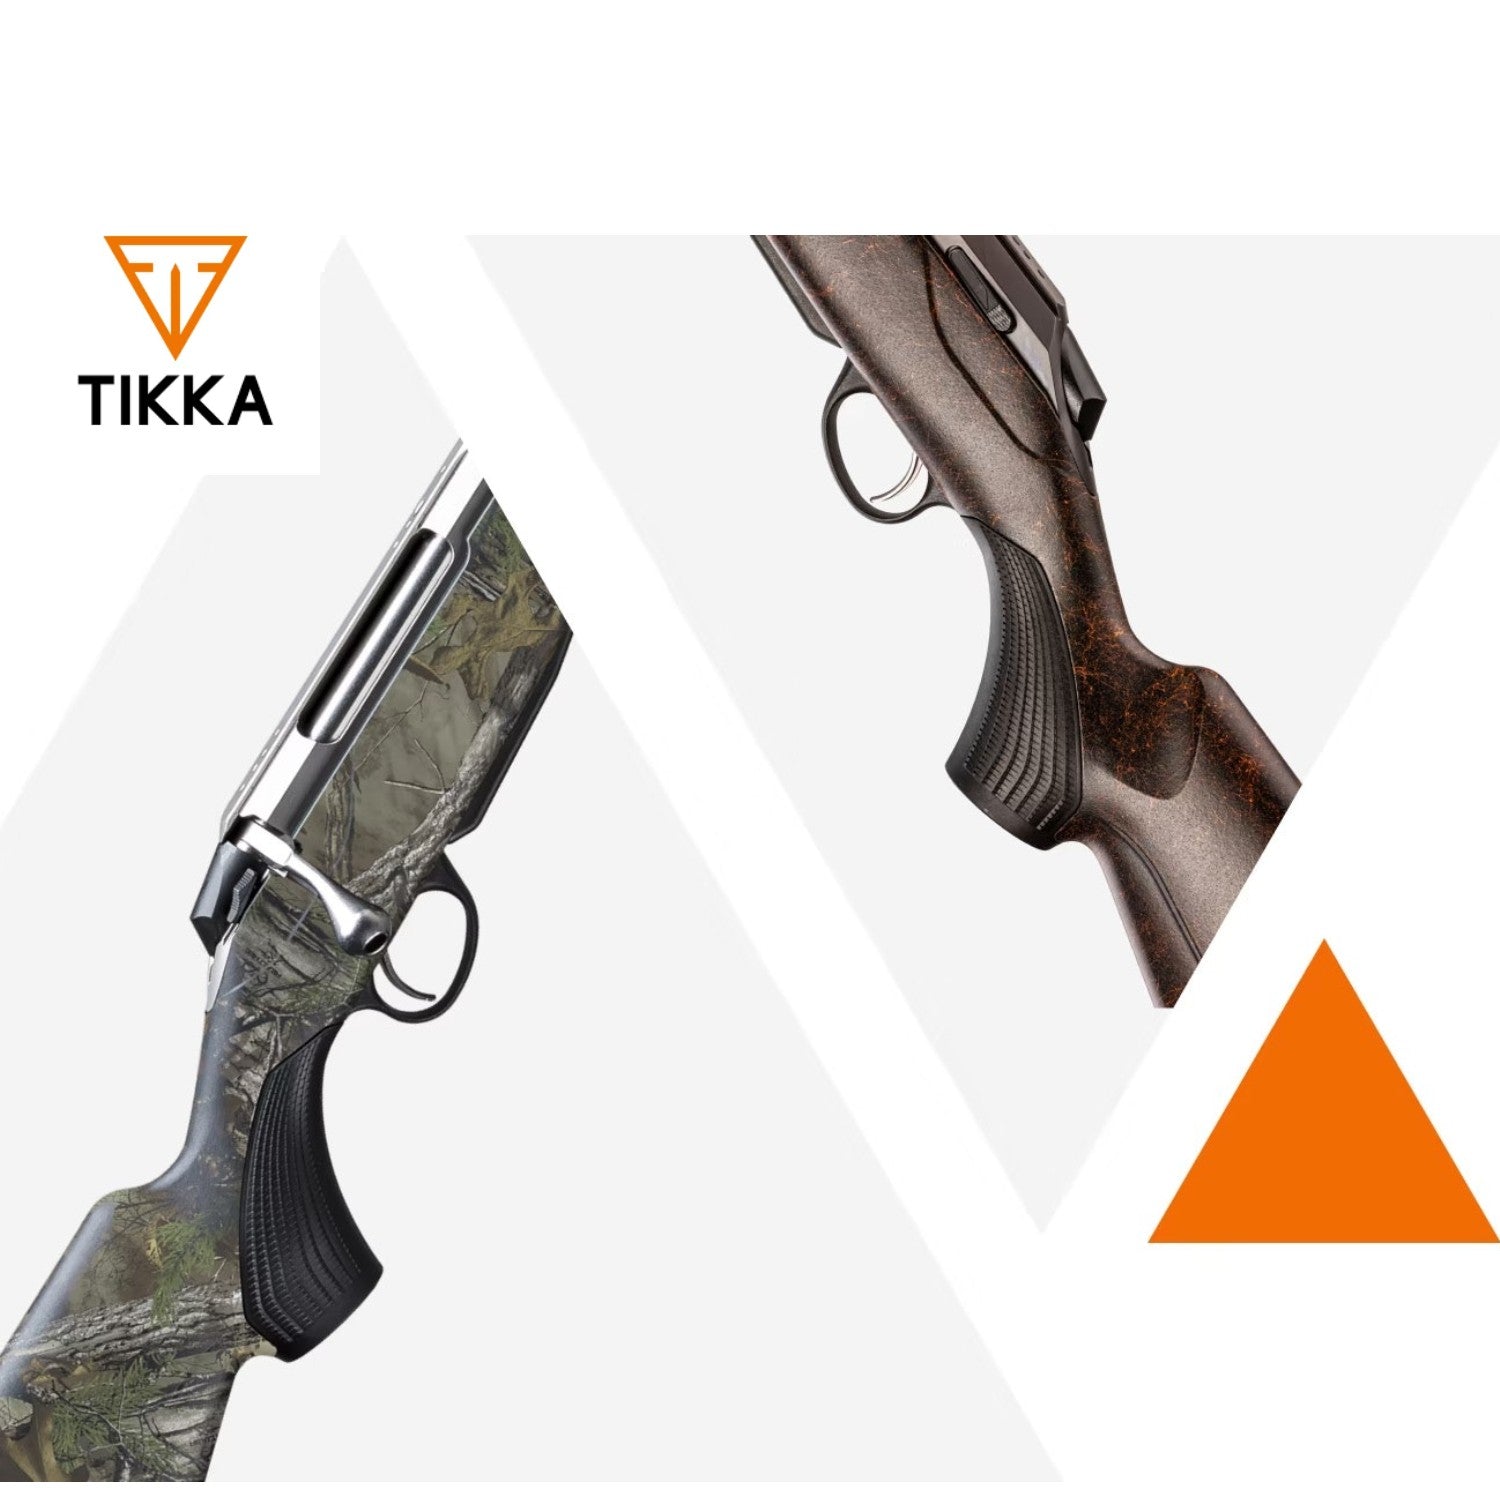 Explore Tikka Rifles